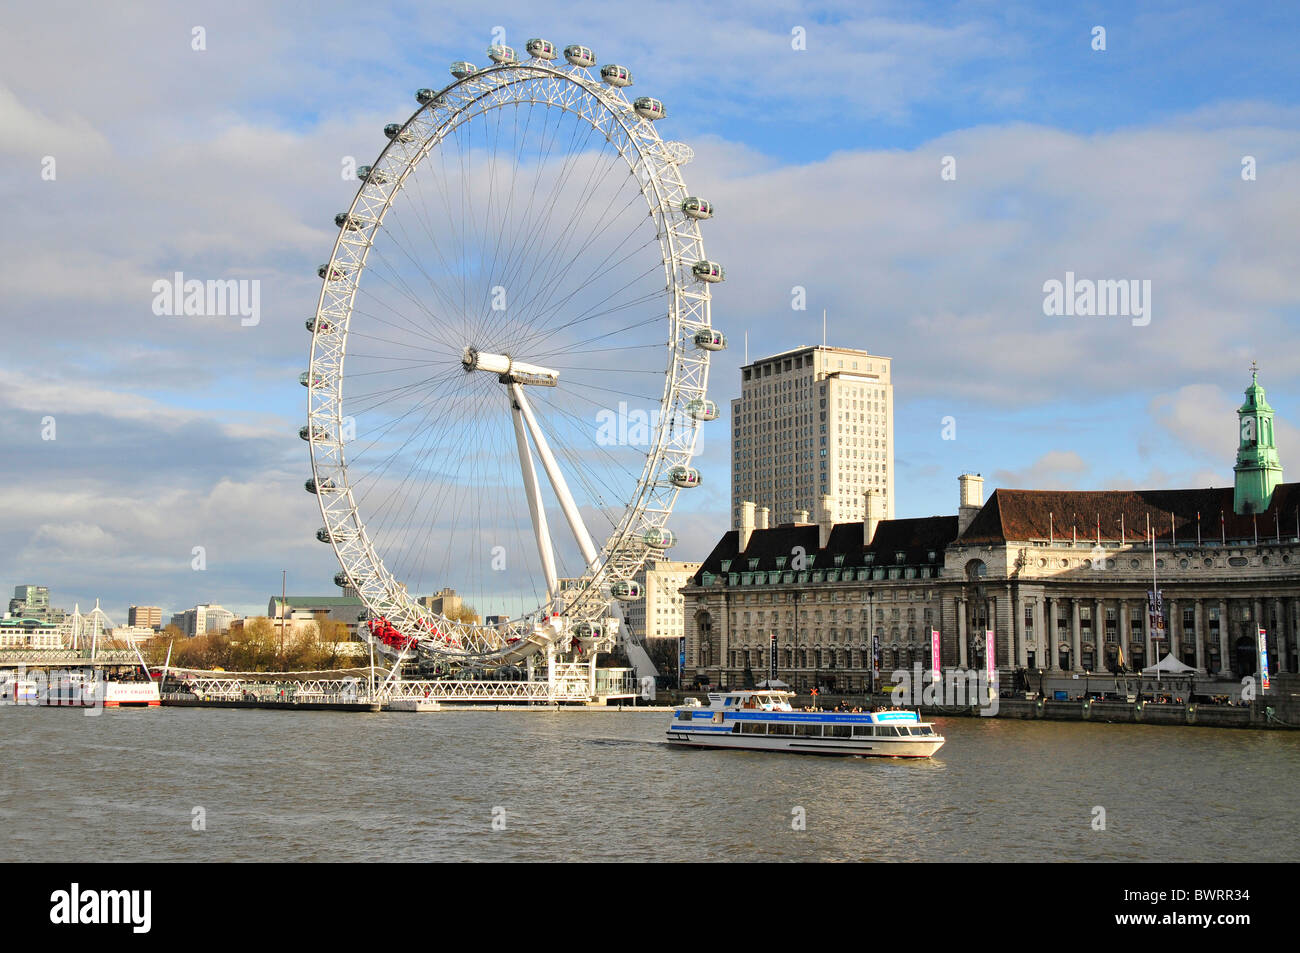 Fahrgastschiff am London Eye Riesenrad an der Themse, London, England, Vereinigtes Königreich, Europa Stockfoto